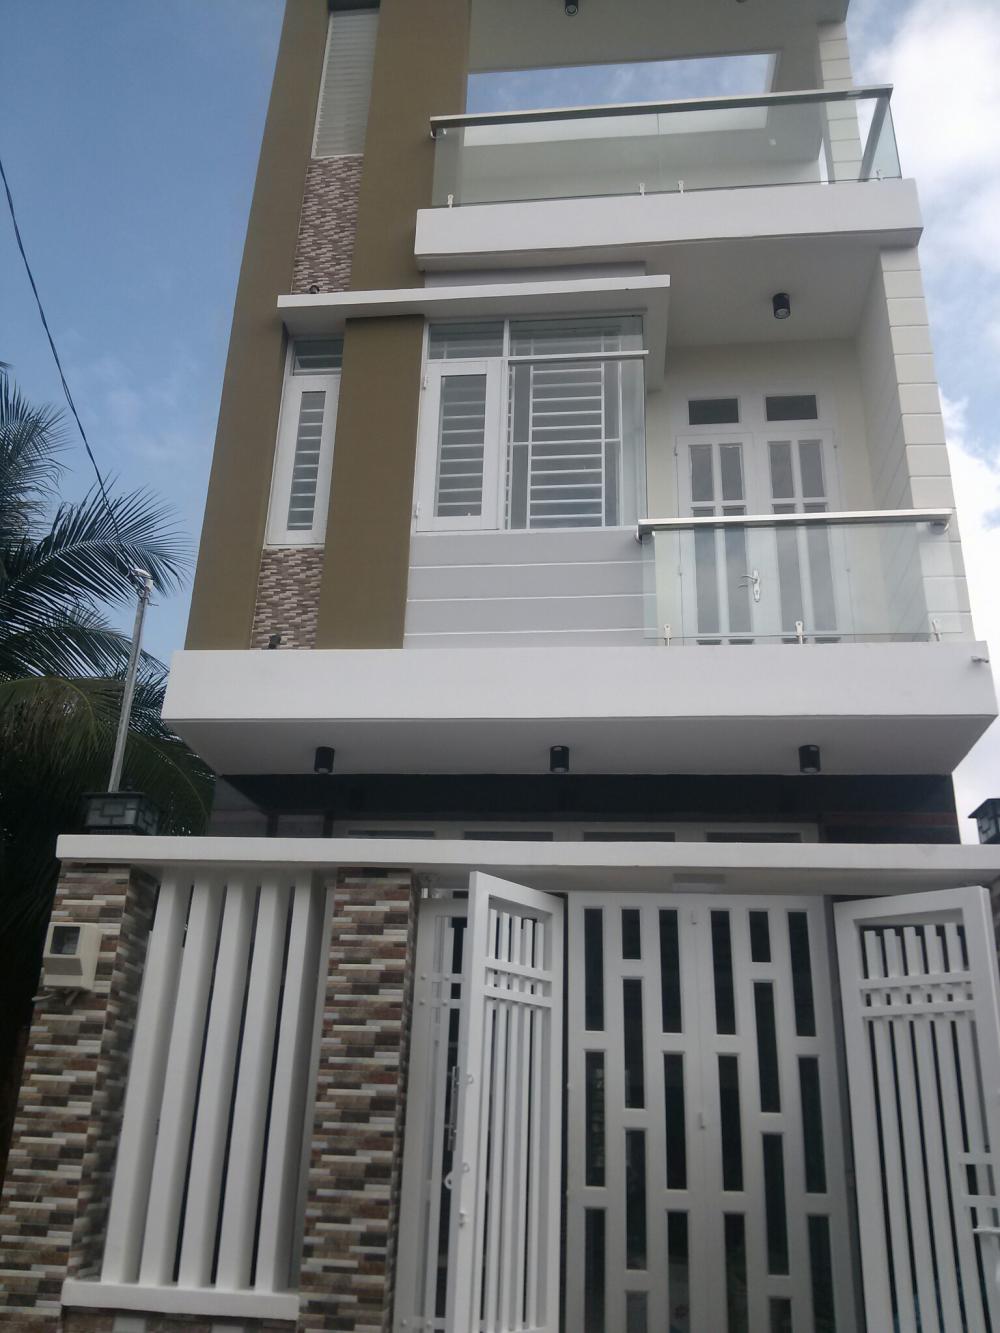 Bán nhà rất đẹp, thiết kế hiện đại, đường 6m, Nguyễn Văn Tạo, nhà bè, khu dân cư văn minh